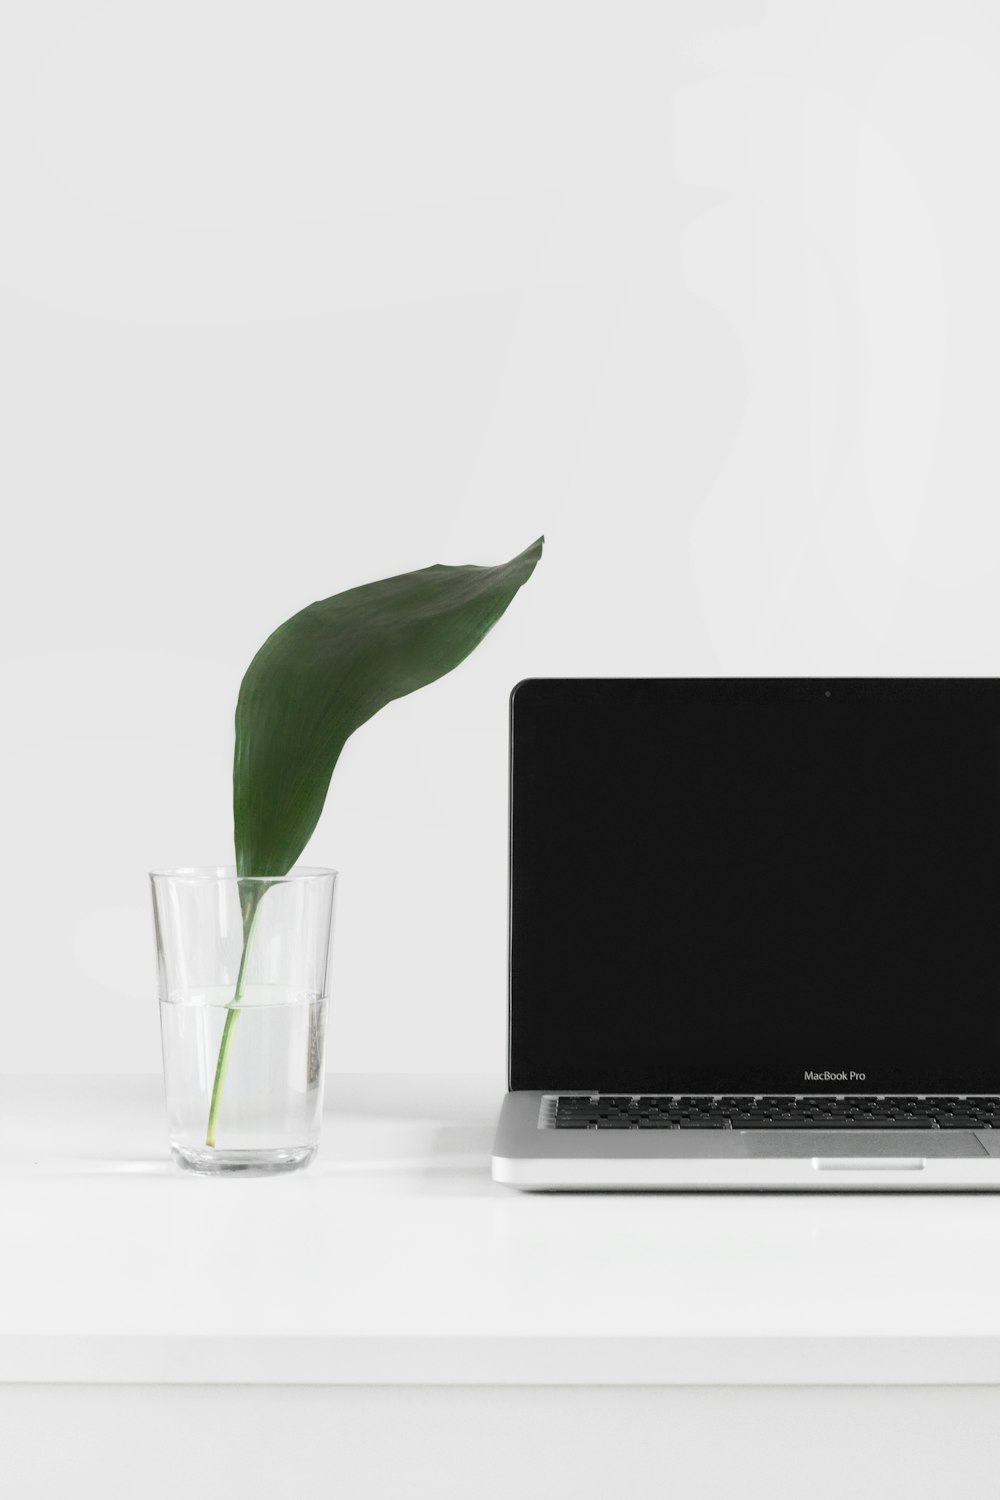 MacBook Pro à côté d’une plante dans un vase